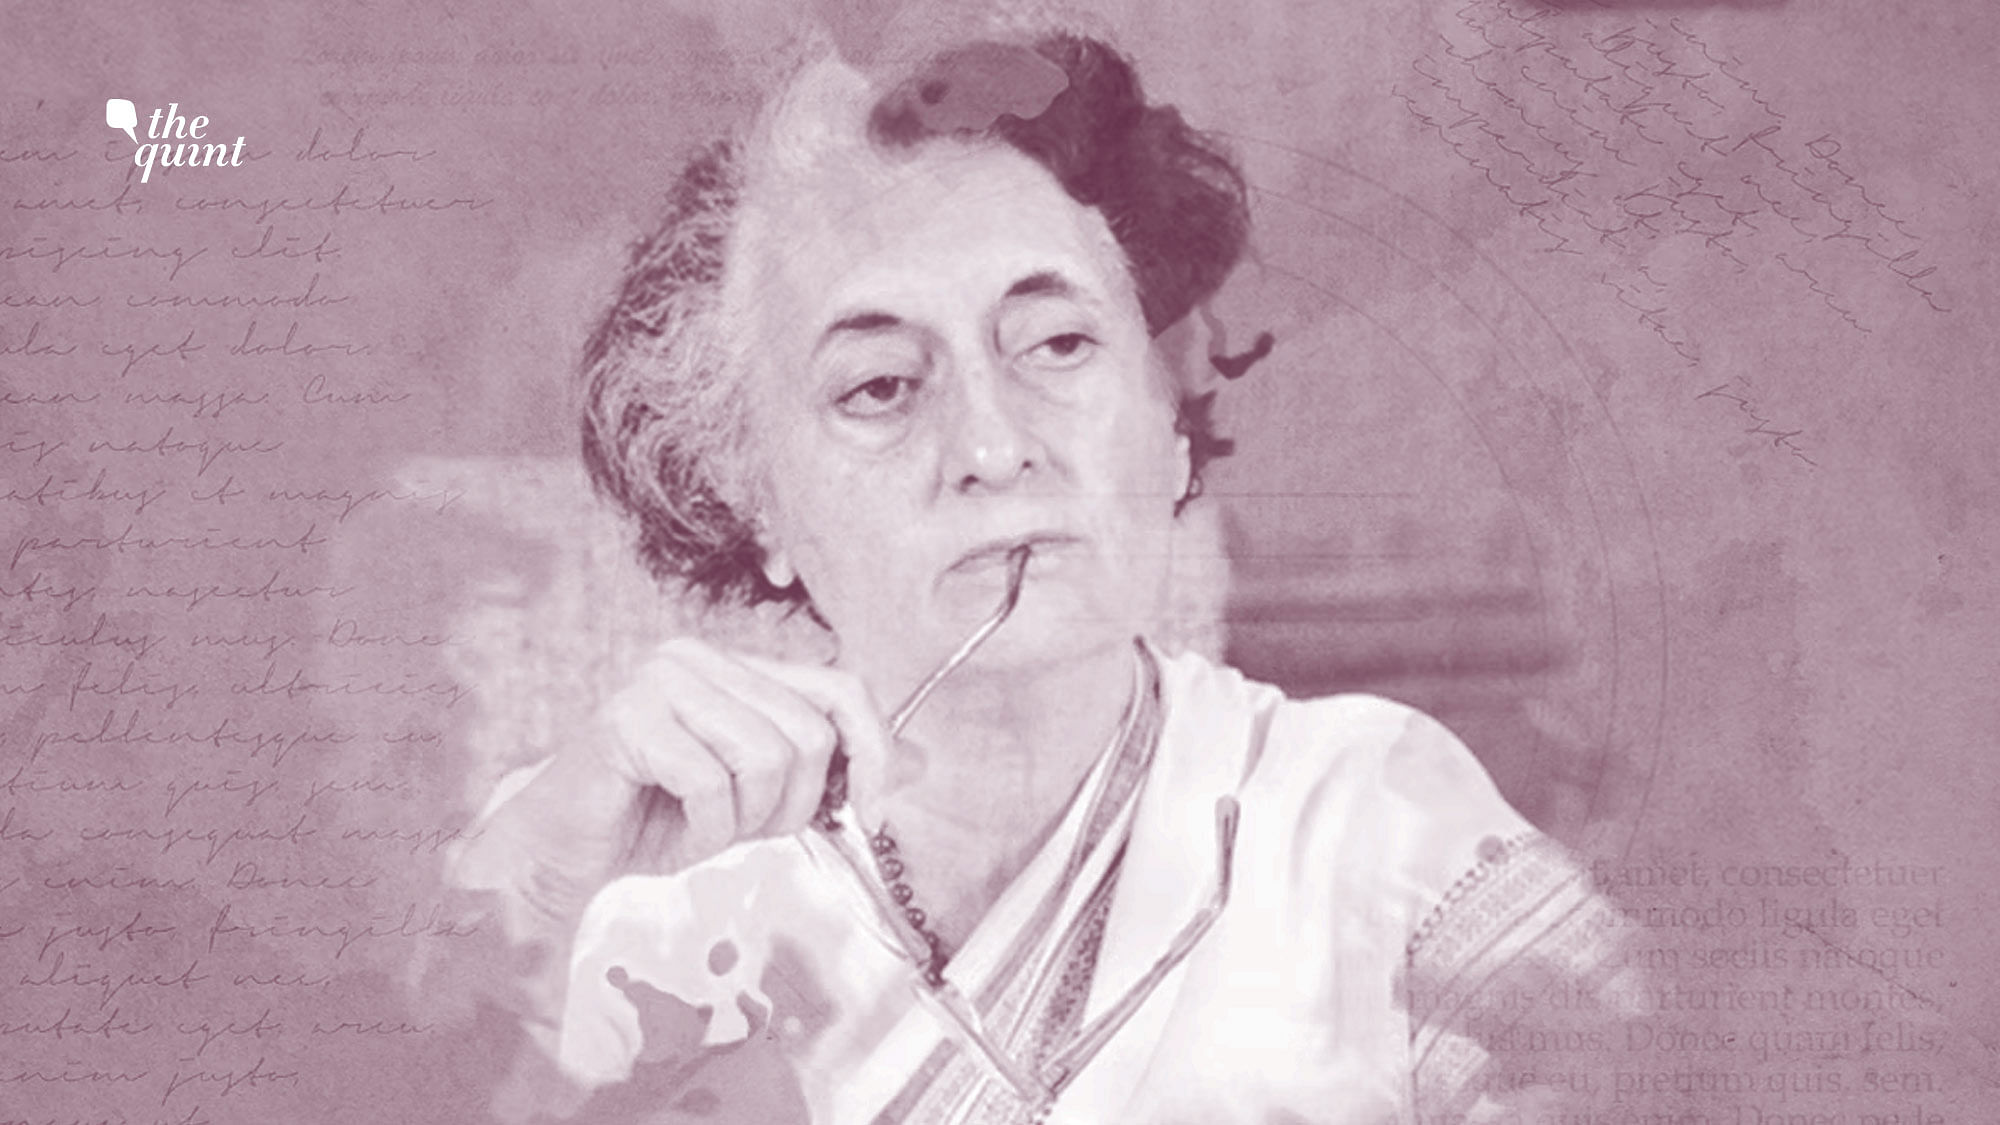 Image of Indira Gandhi used for representational purposes.